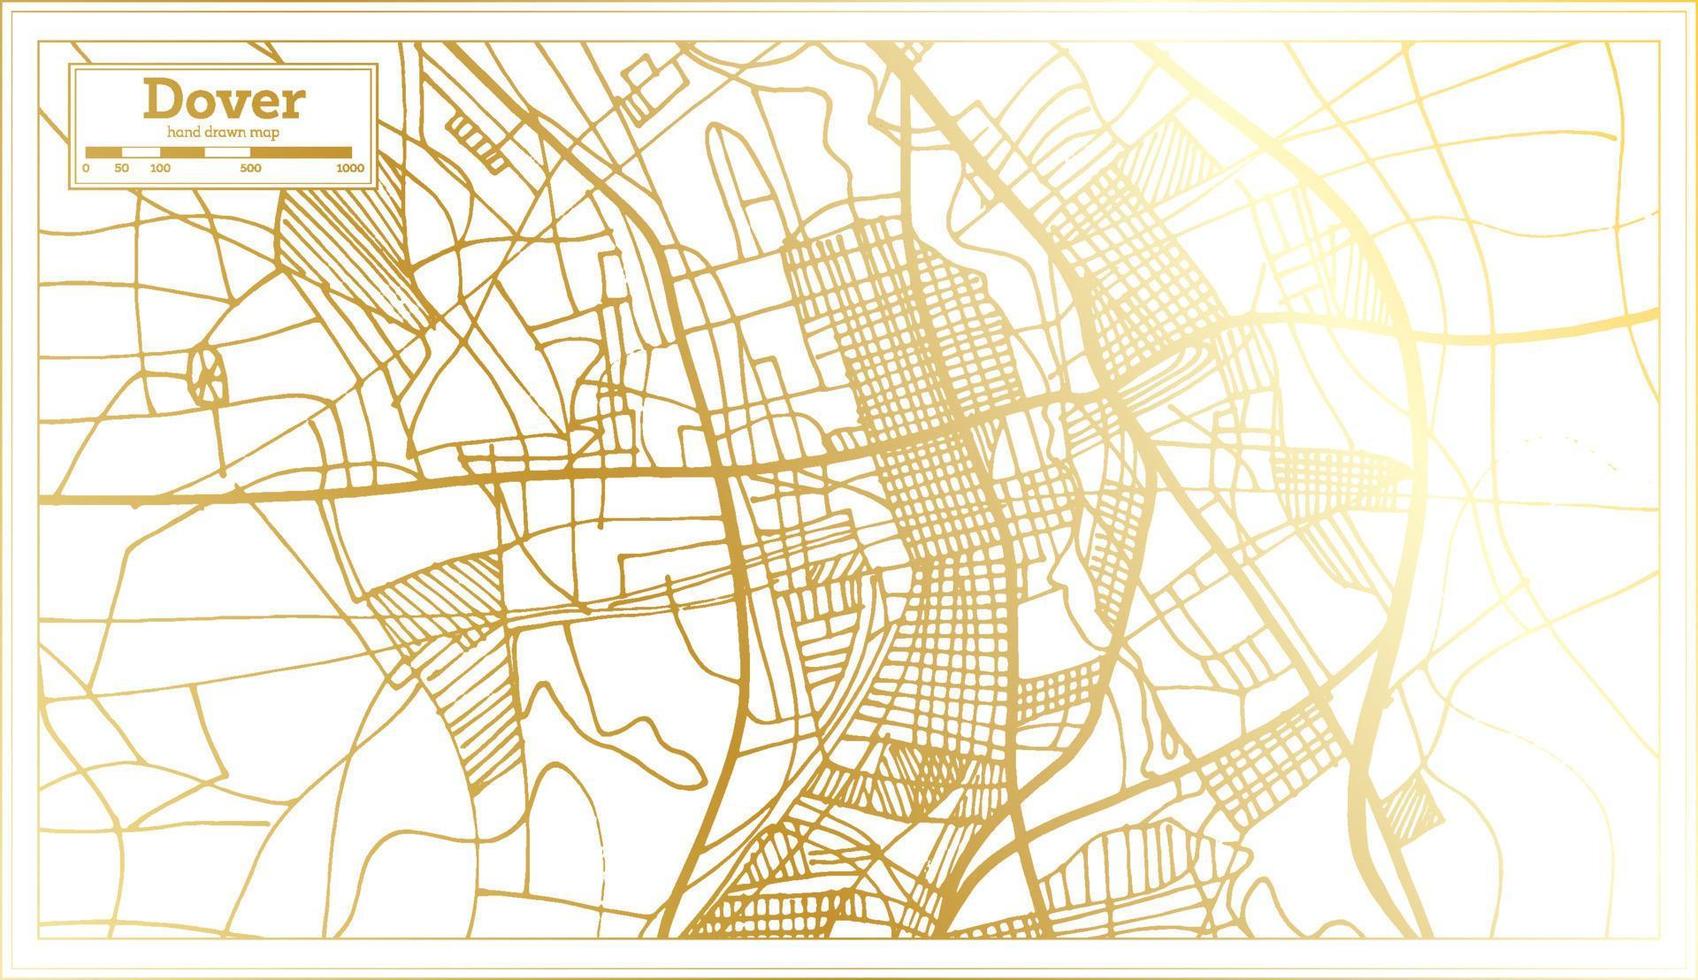 Dover Delaware Verenigde Staten van Amerika stad kaart in retro stijl in gouden kleur. schets kaart. vector